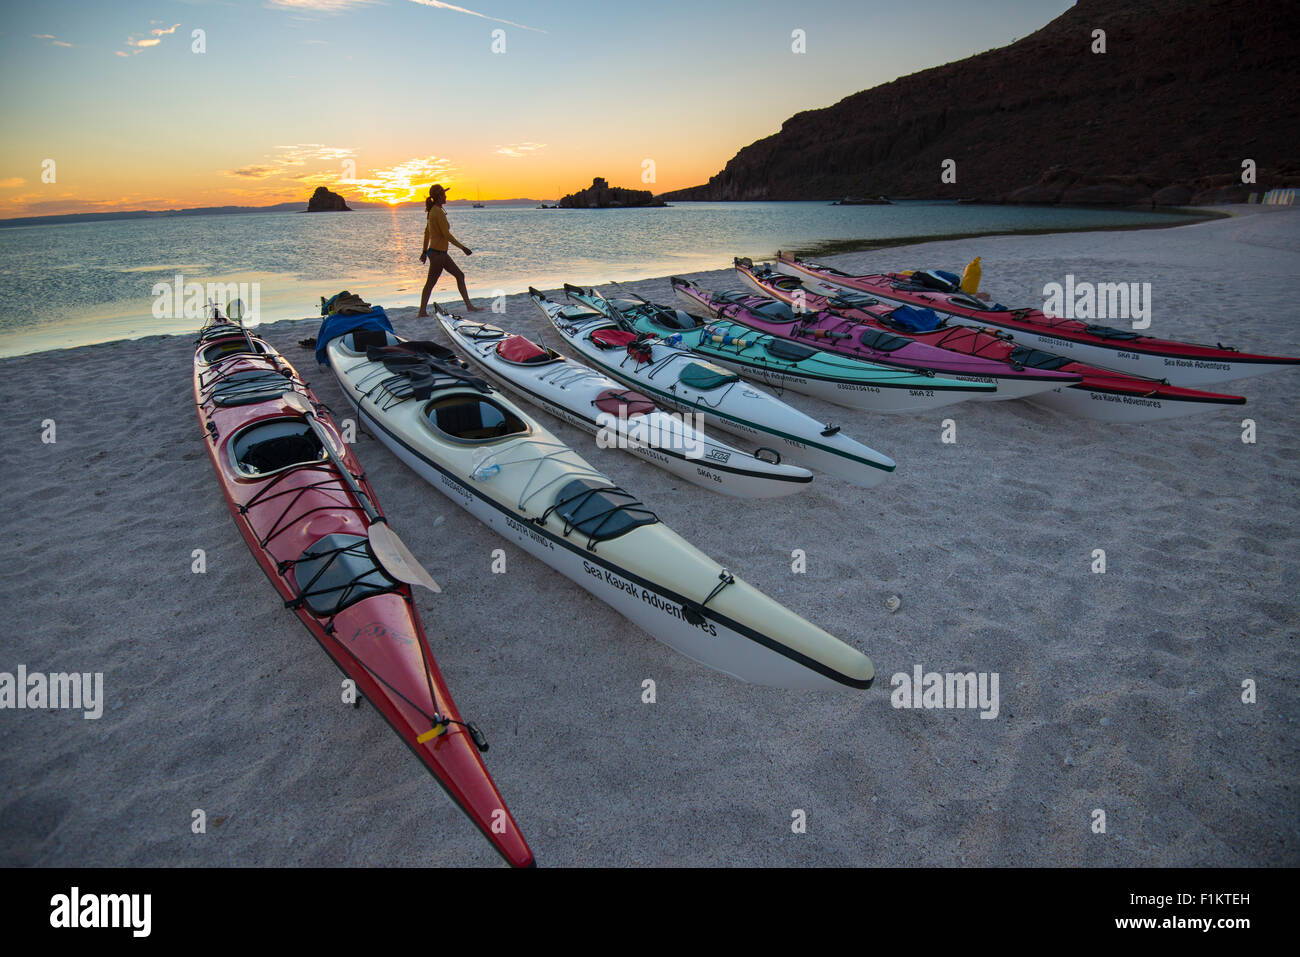 México, Baja, Lapaz, Espiritu Santo. Mujer de pie cerca de los kayaks durante la puesta de sol. Foto de stock